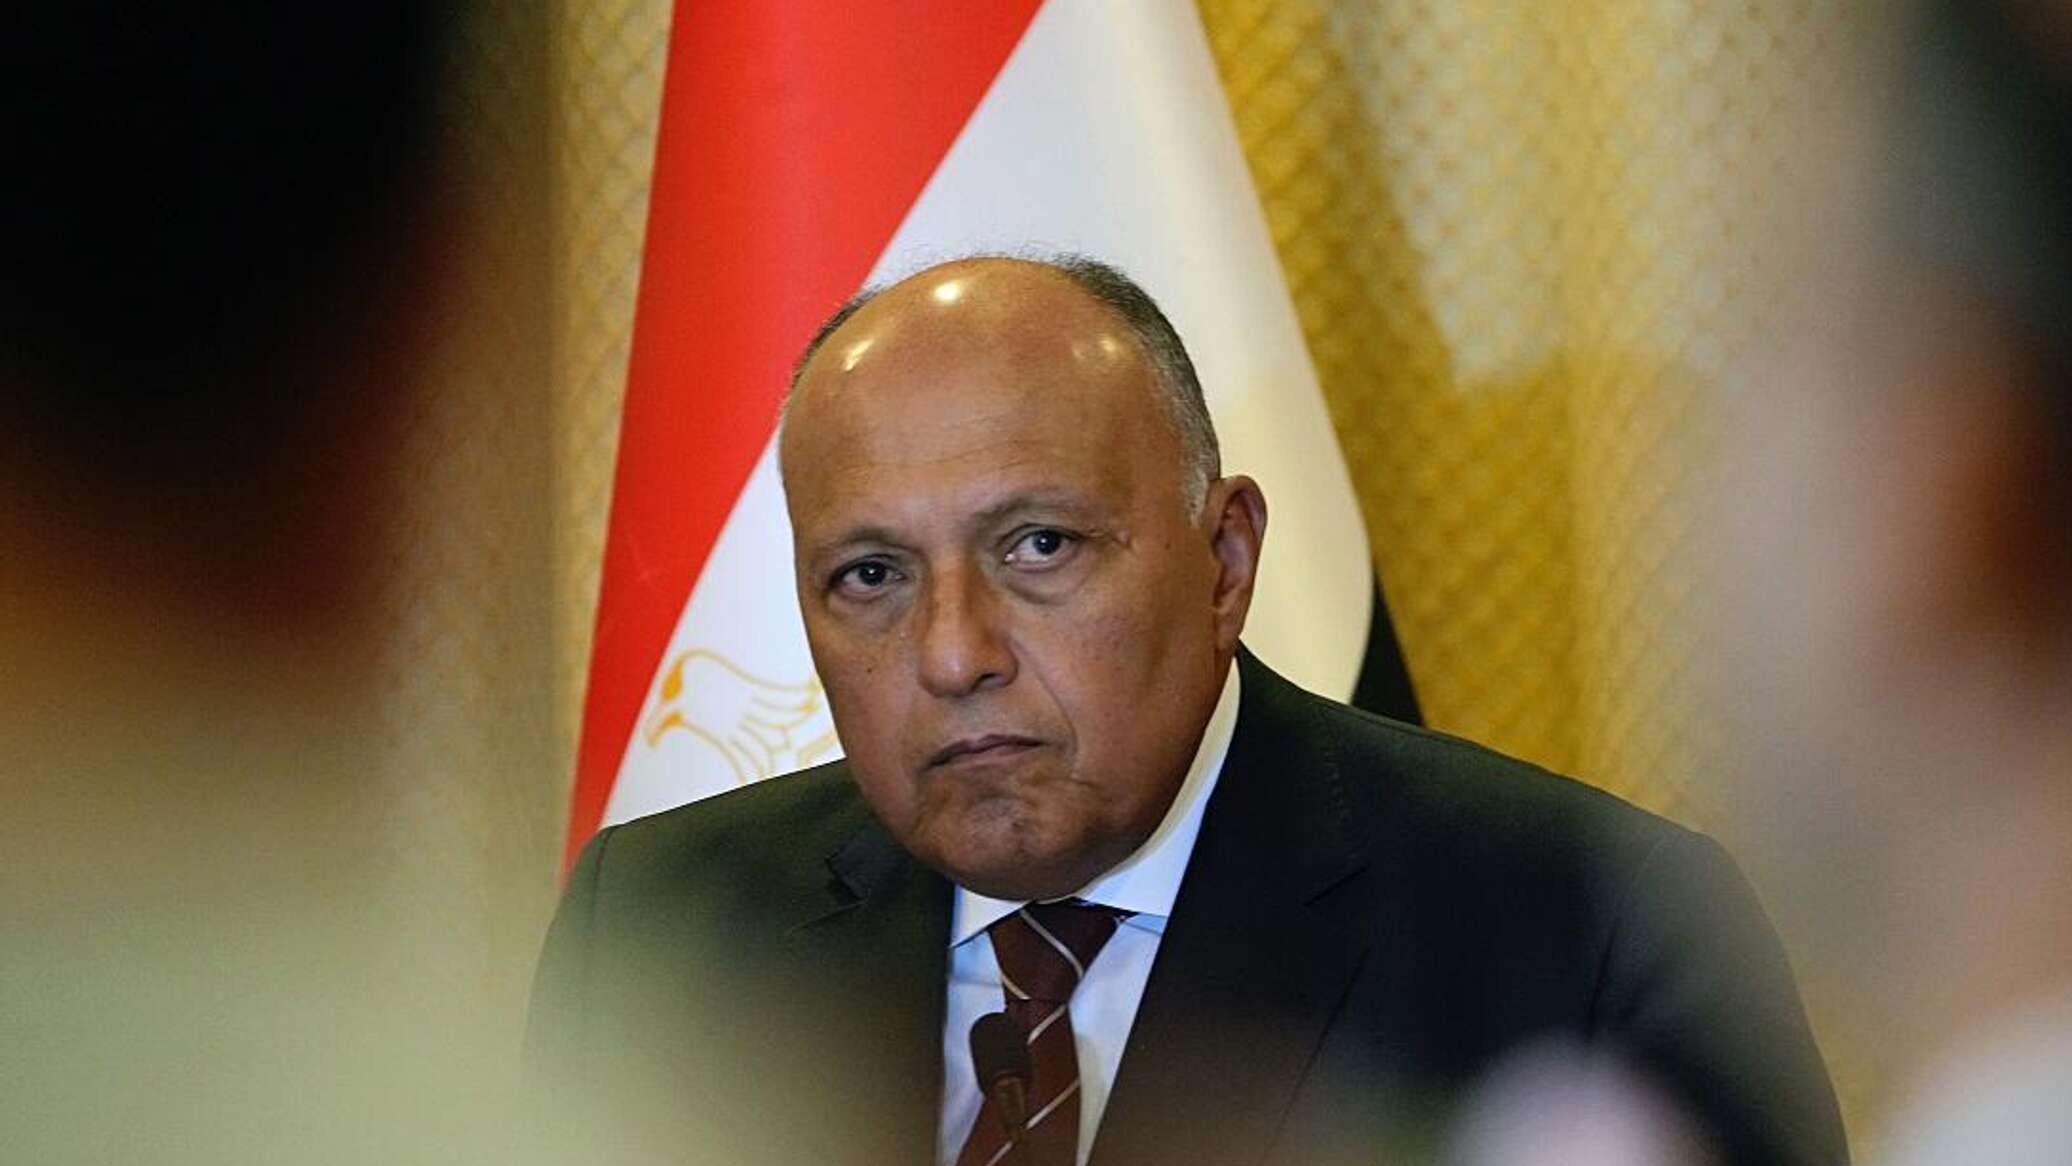 مصر تؤكد أنها لم تتلق التصاريح اللازمة لإدخال المساعدات رغم أن معبر رفح مفتوح "رسميا"